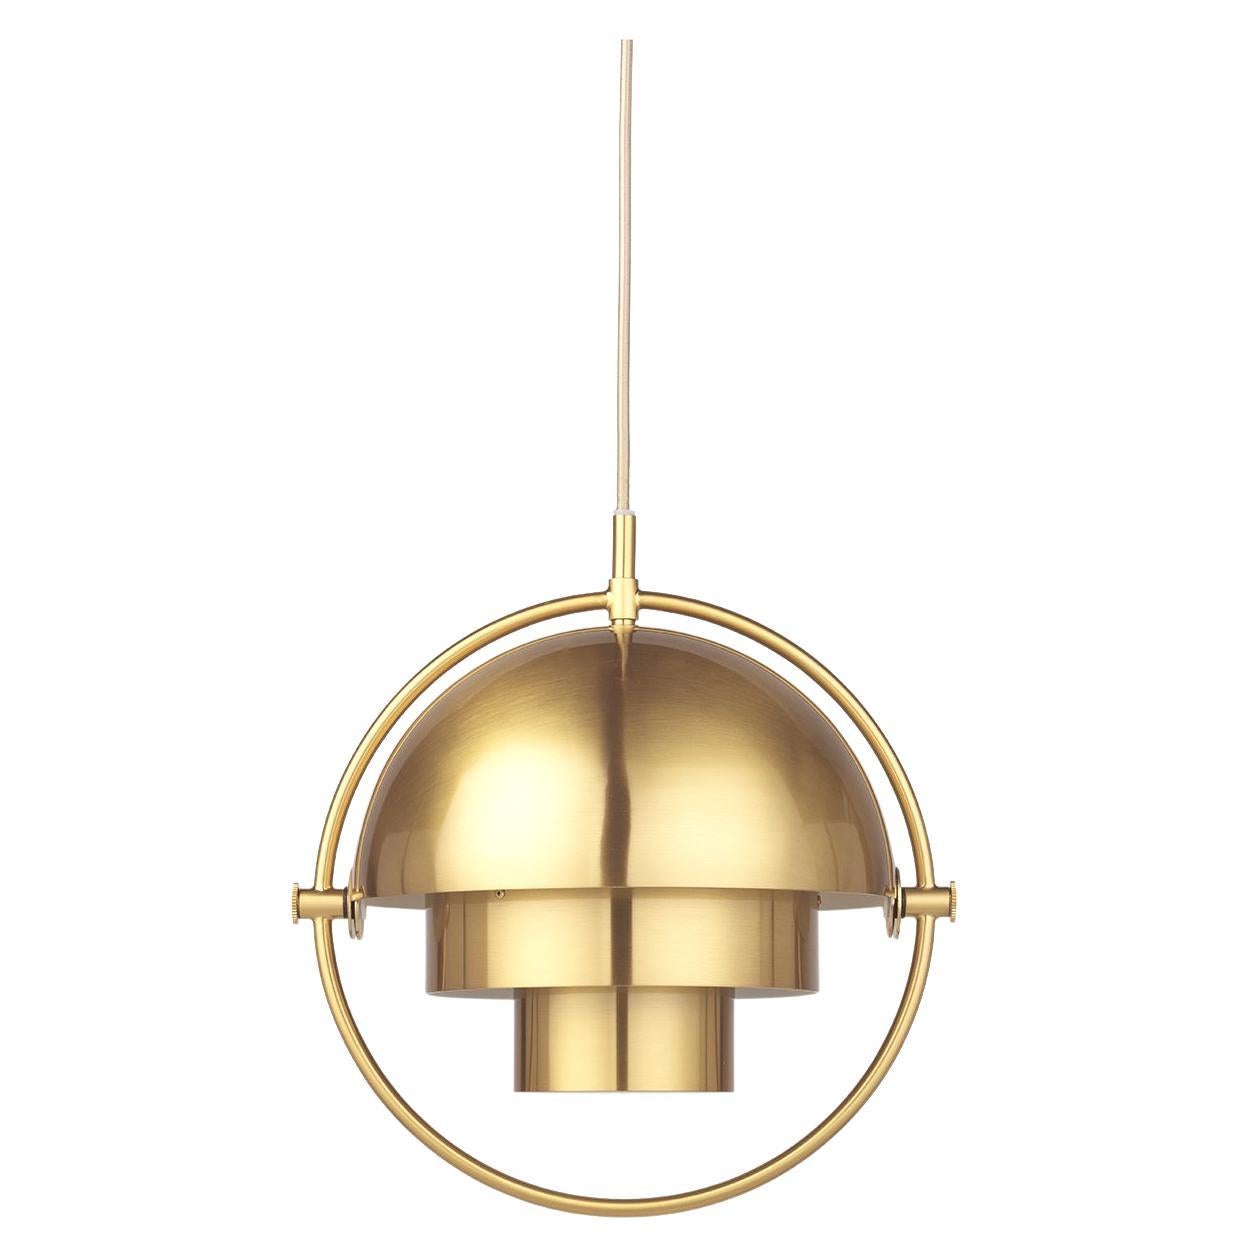 La suspension Multi-Lite s'inscrit dans l'âge d'or du design danois avec sa forme caractéristique de deux extérieurs opposés, des abat-jour mobiles qui permettent de créer une installation personnelle et une large gamme de valeurs d'éclairage dans